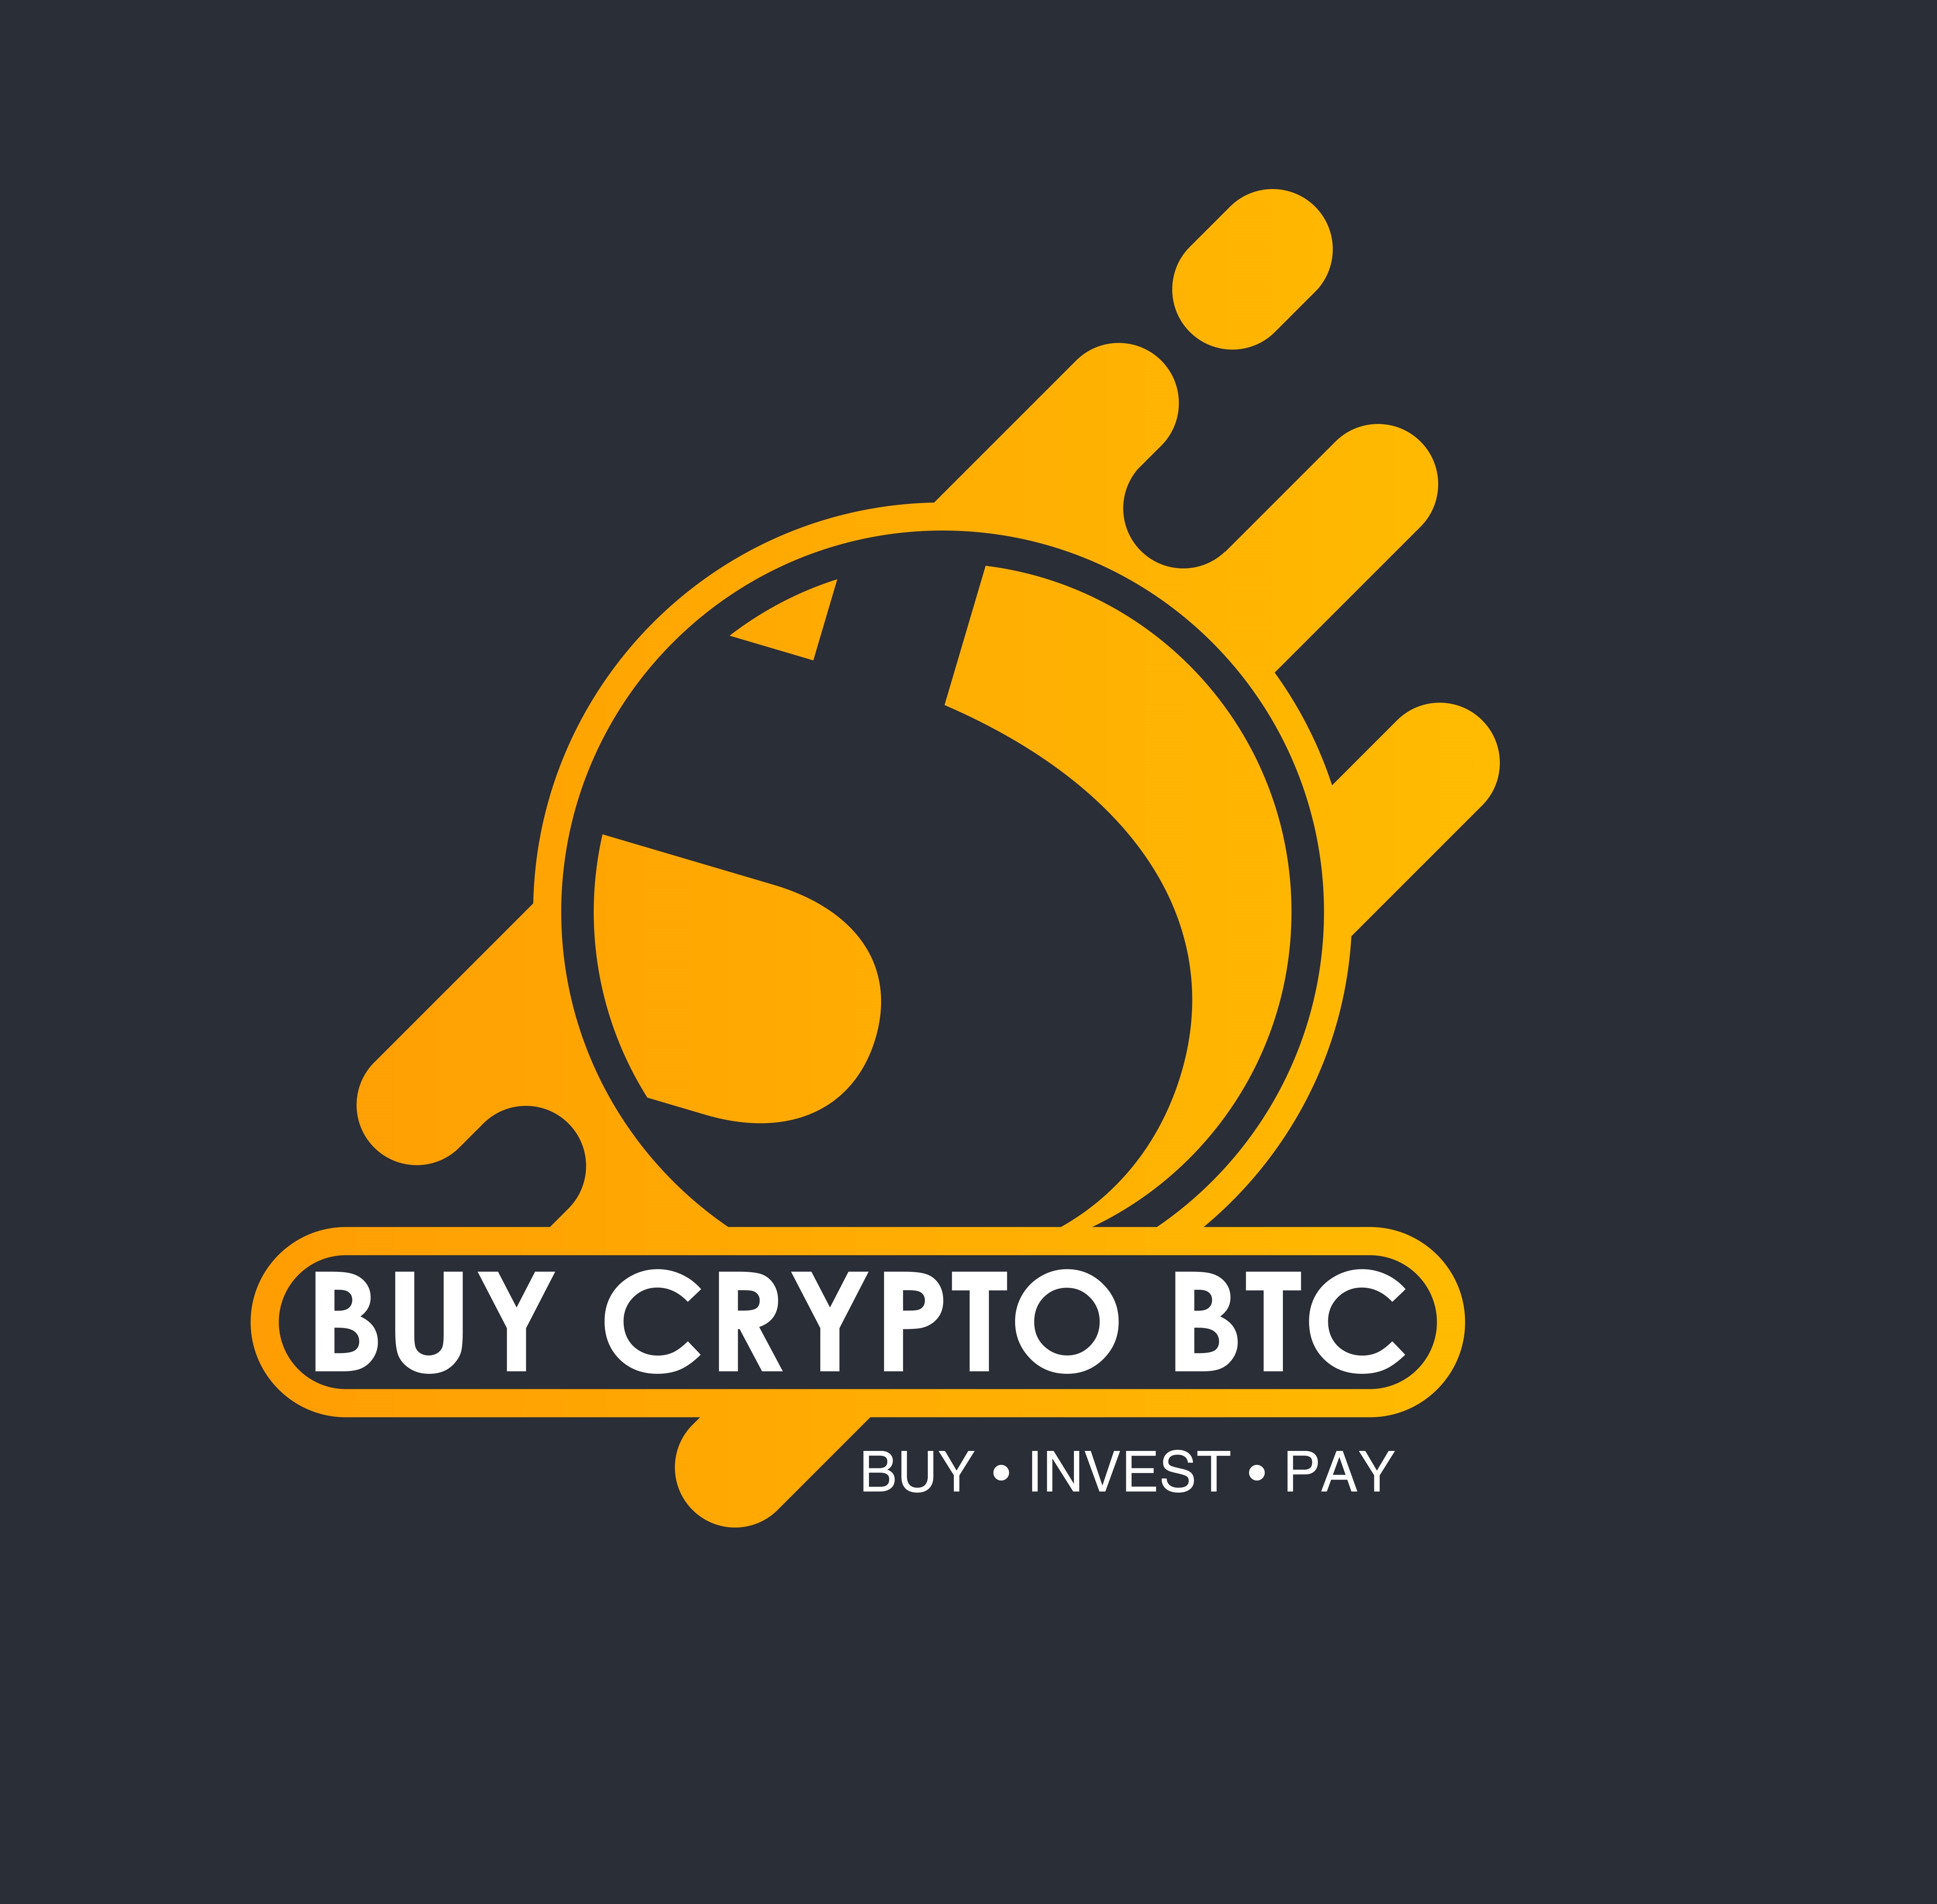 BuyCryptoBTC